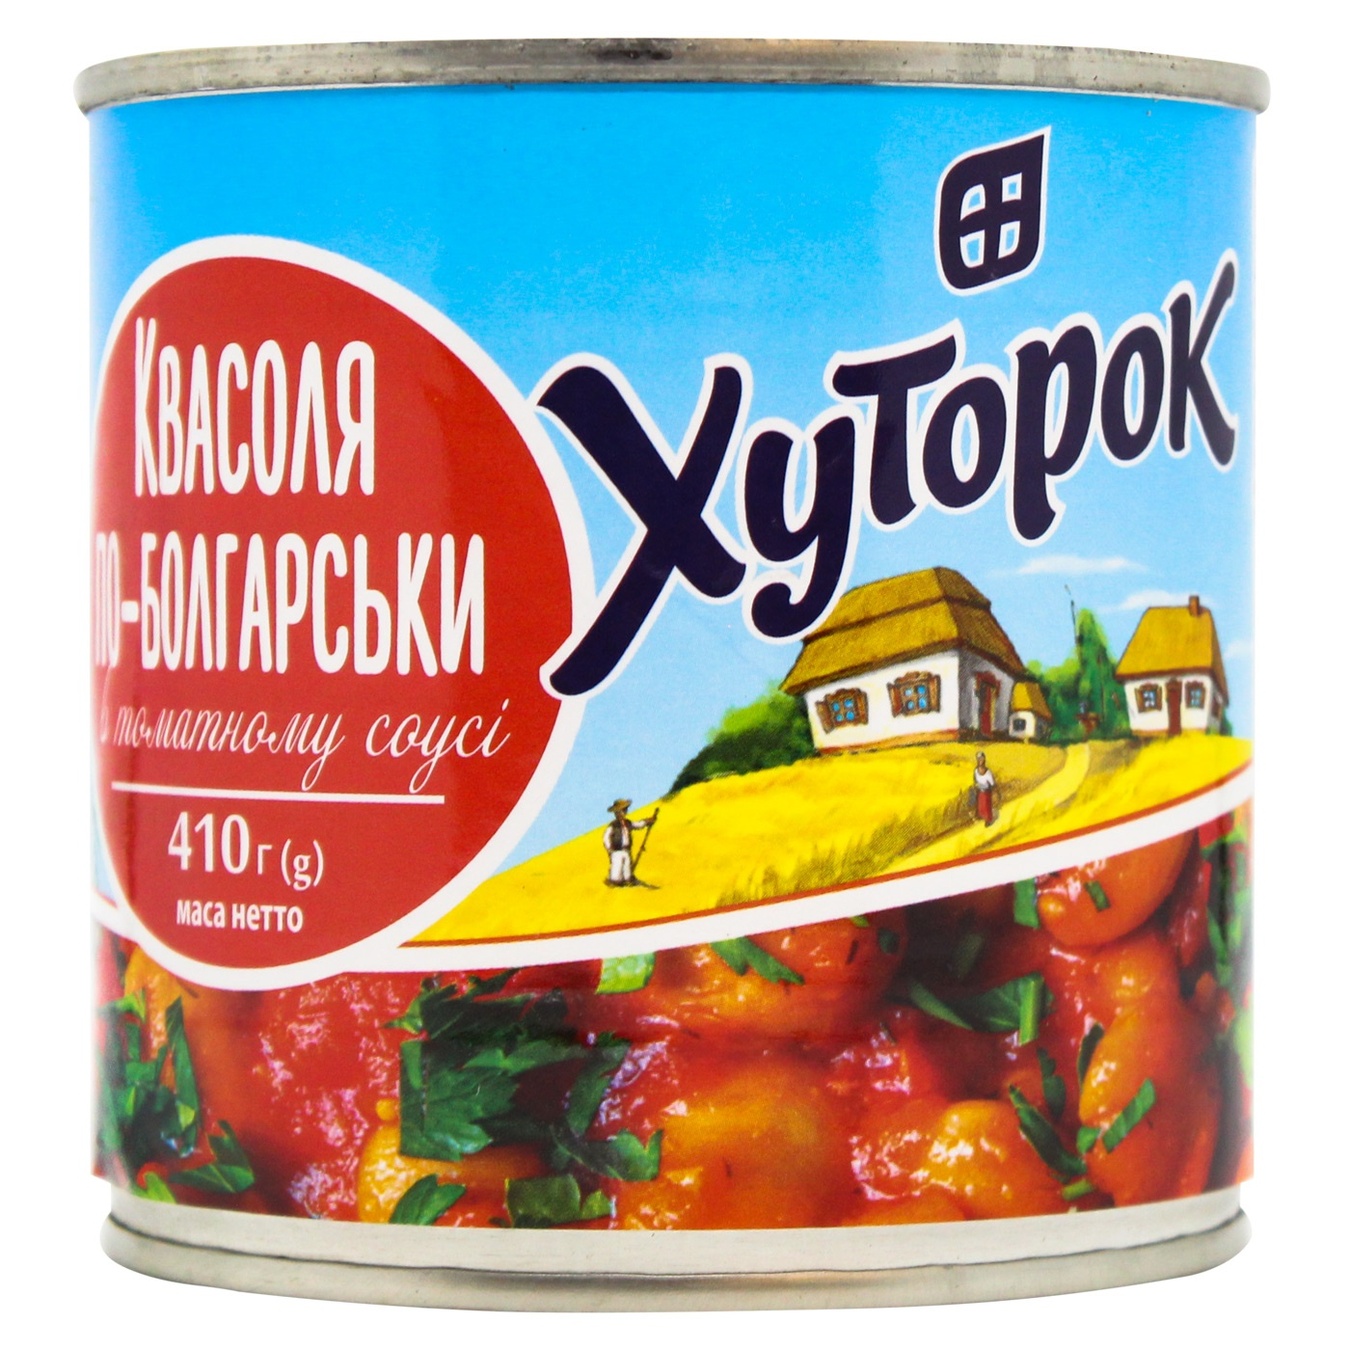 Bulgarian Khutorok beans in tomato sauce 425g